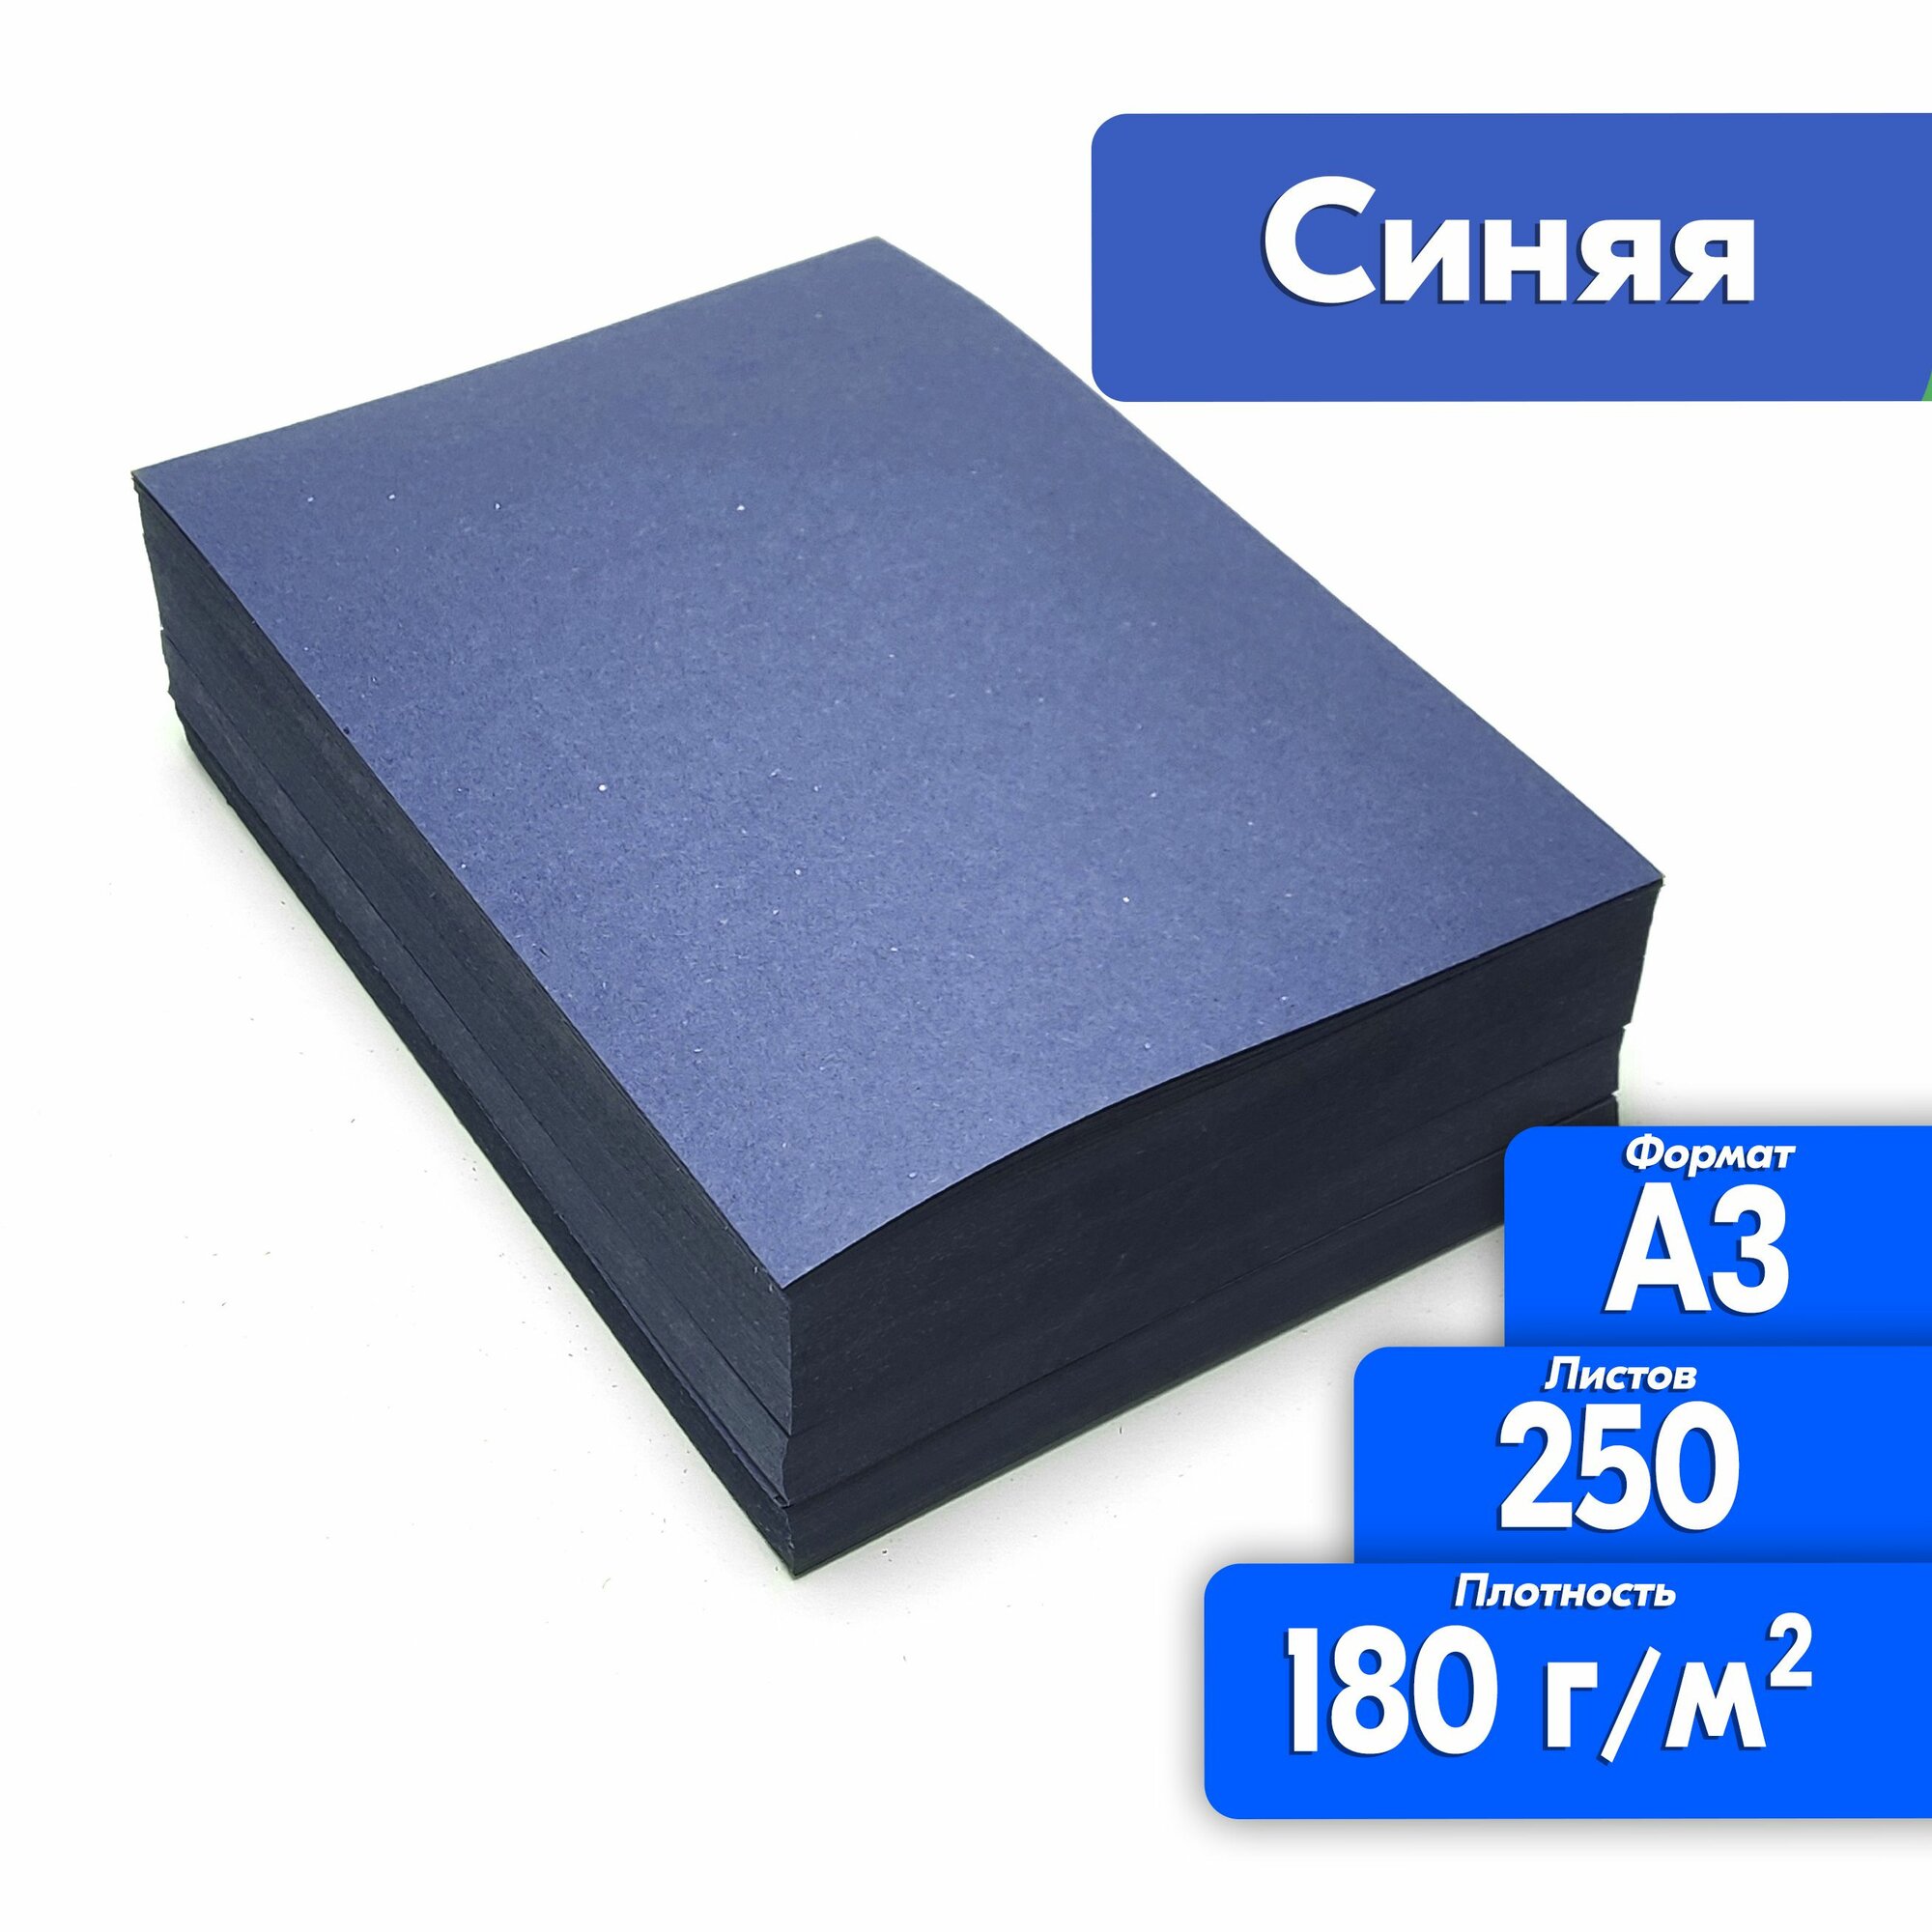 Цветная бумага двухсторонняя А3 250 листов для принтера, синяя, высокая плотность 180 г/м2